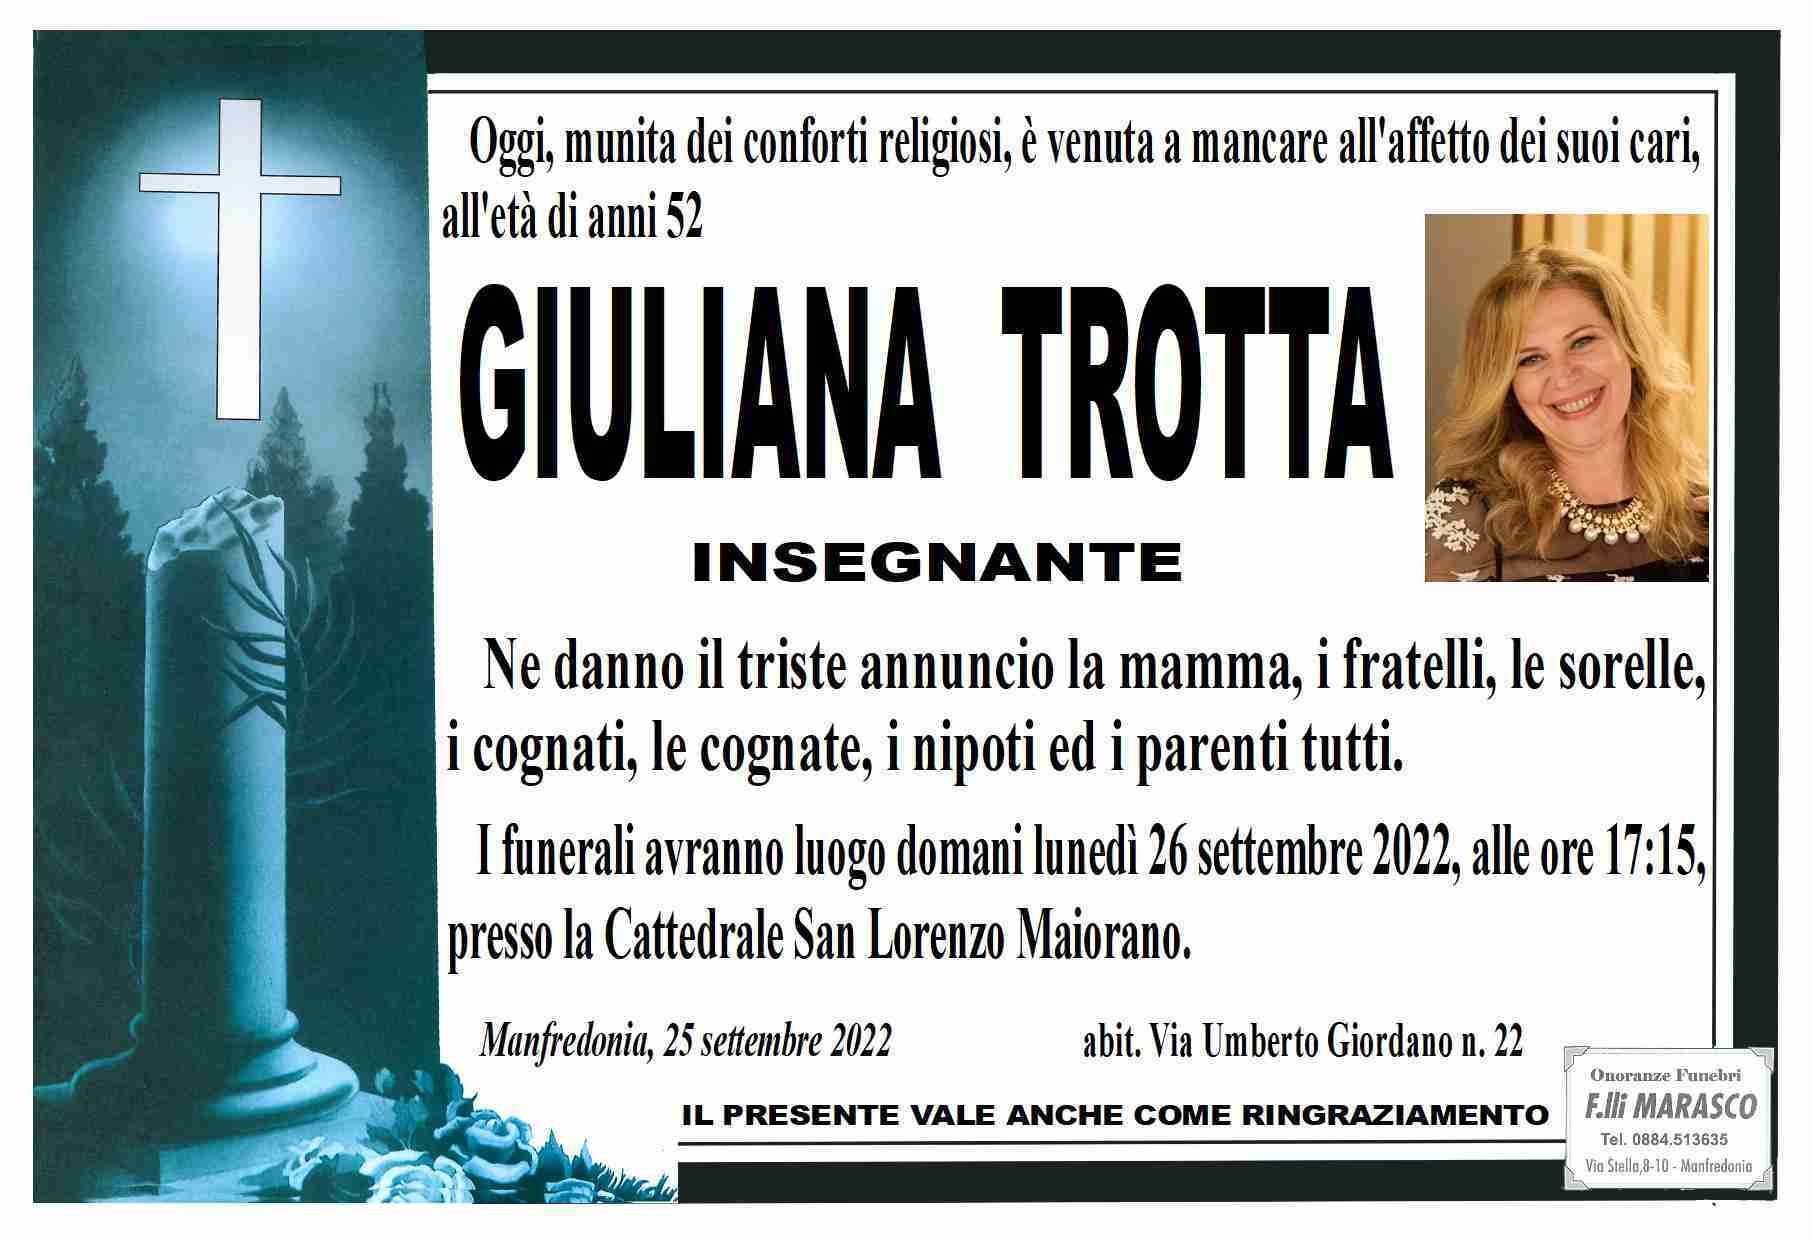 Giuliana Trotta